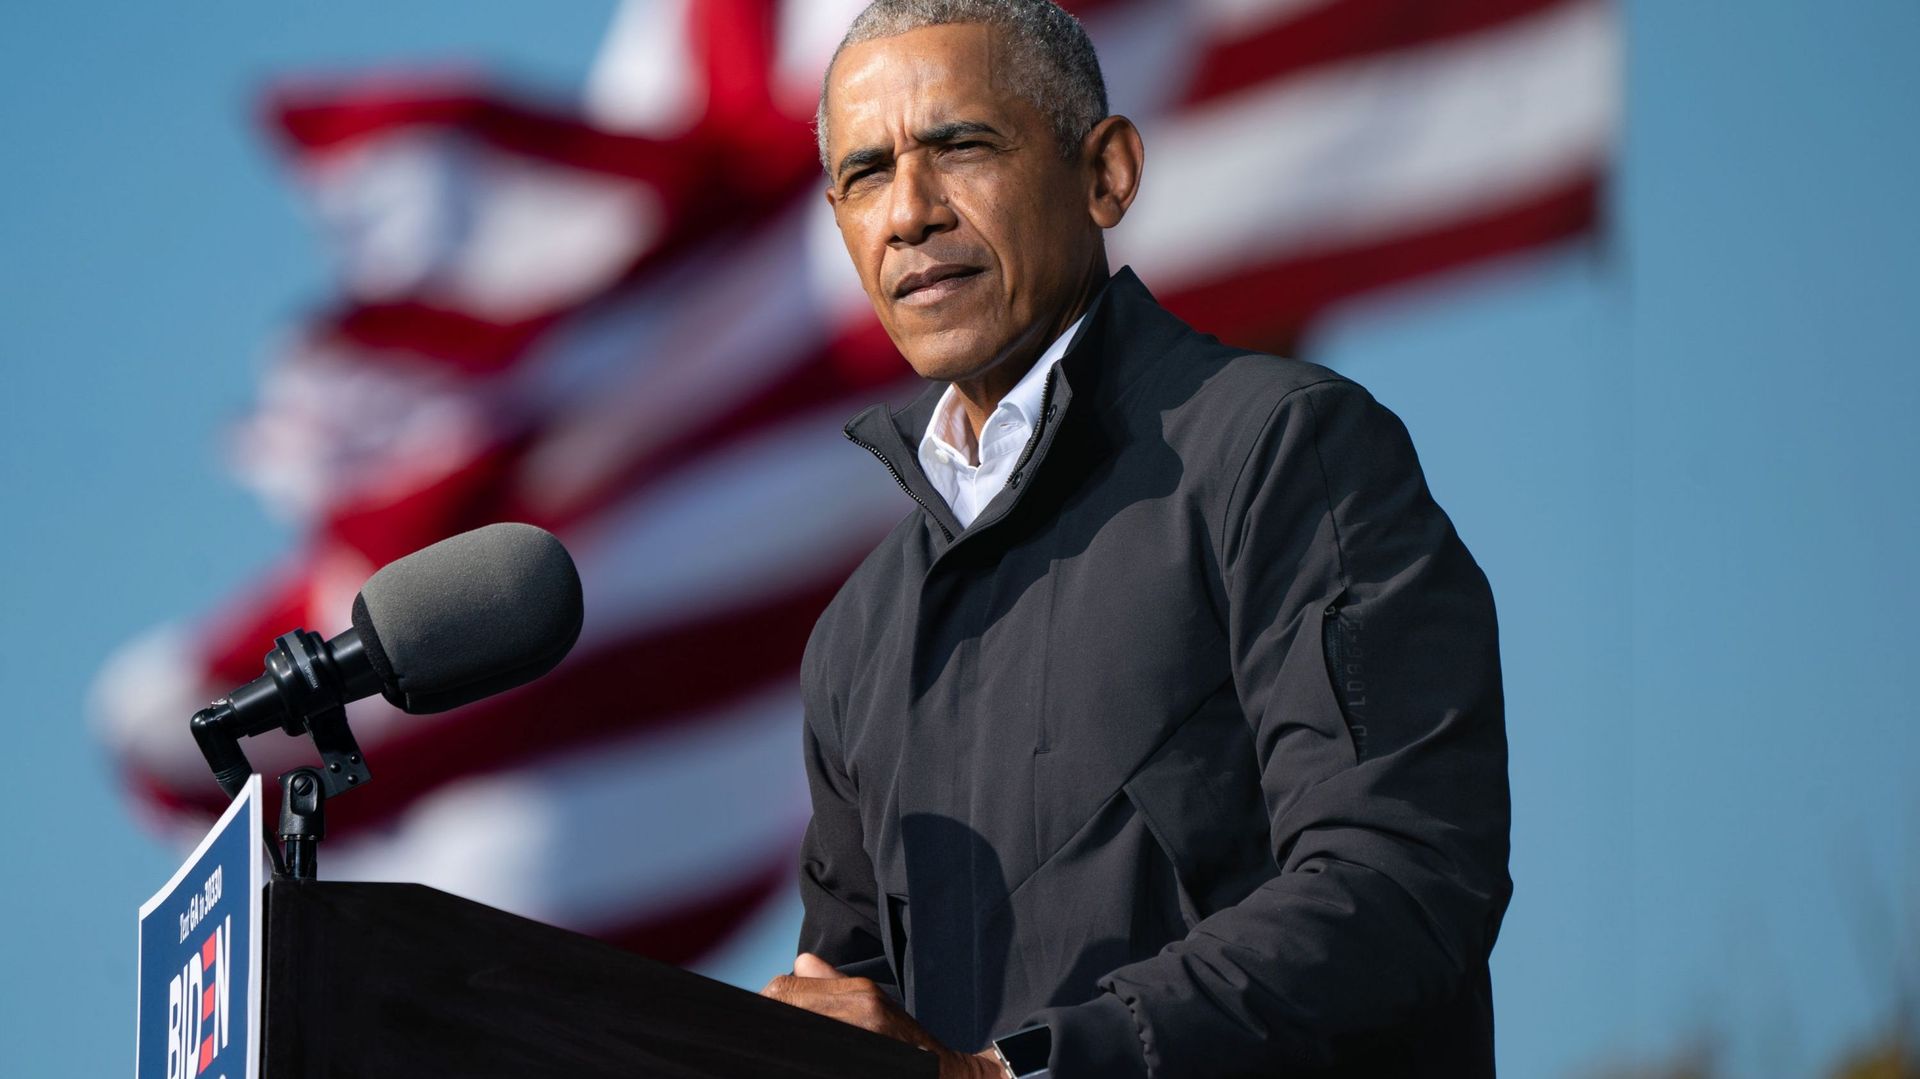 Élections aux États-Unis : le message fort de Barack Obama à l'attention électeurs américains